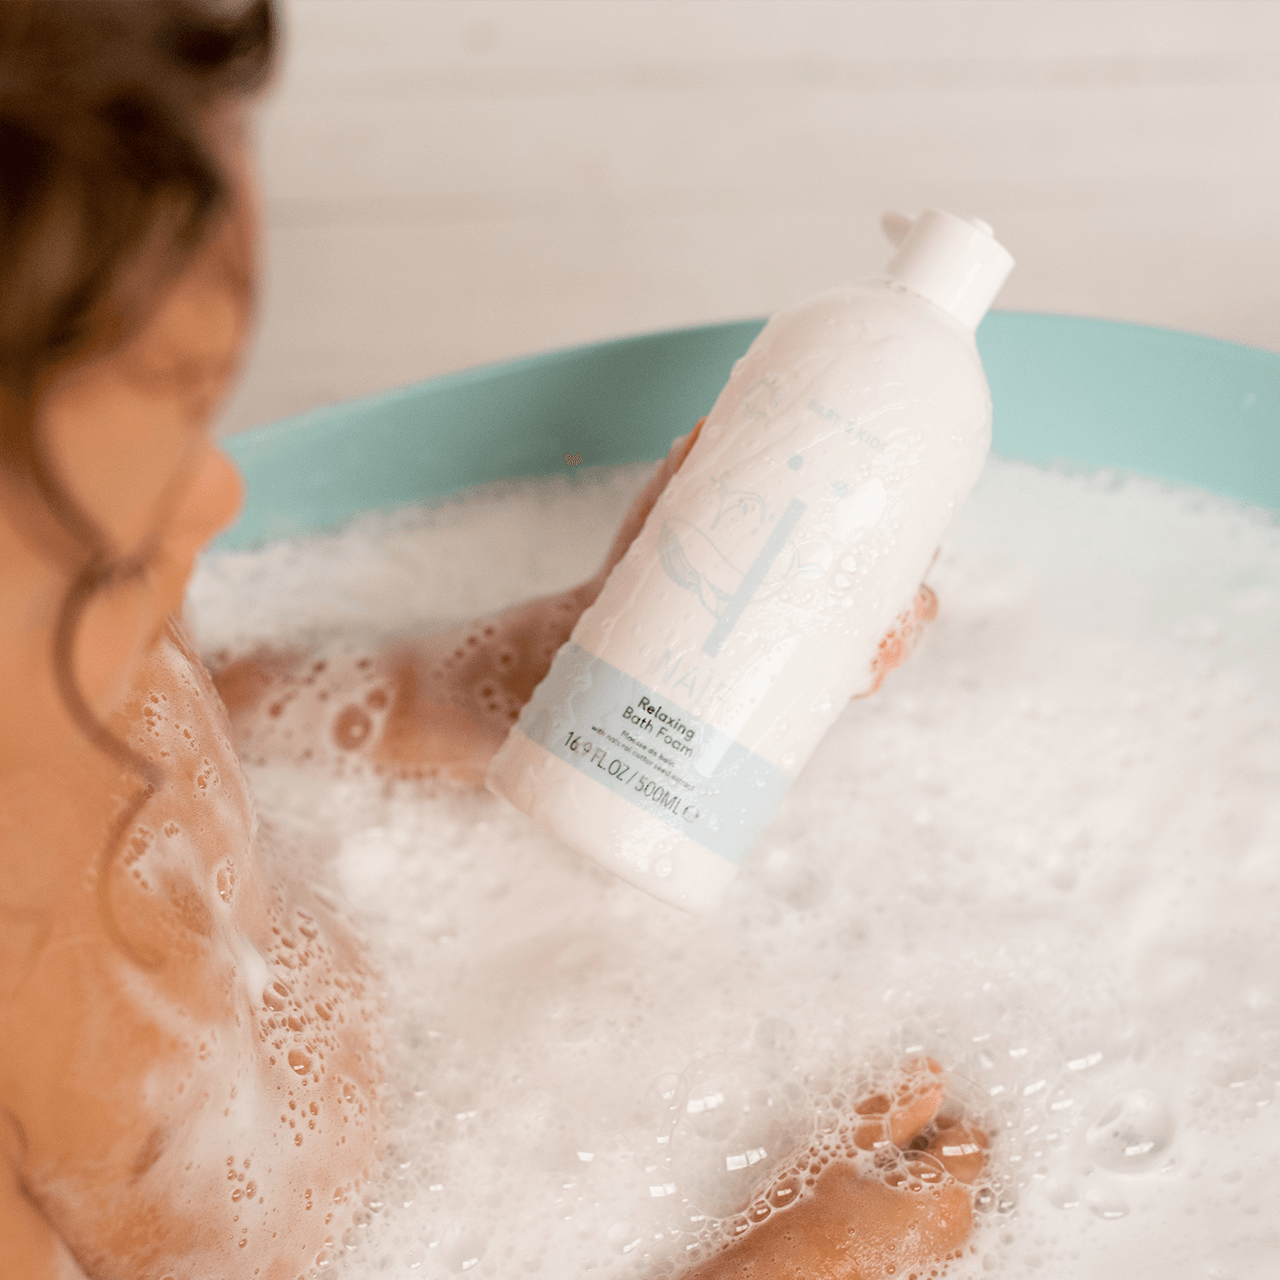 Entspannender Badeschaum - Relaxing Bath Foam